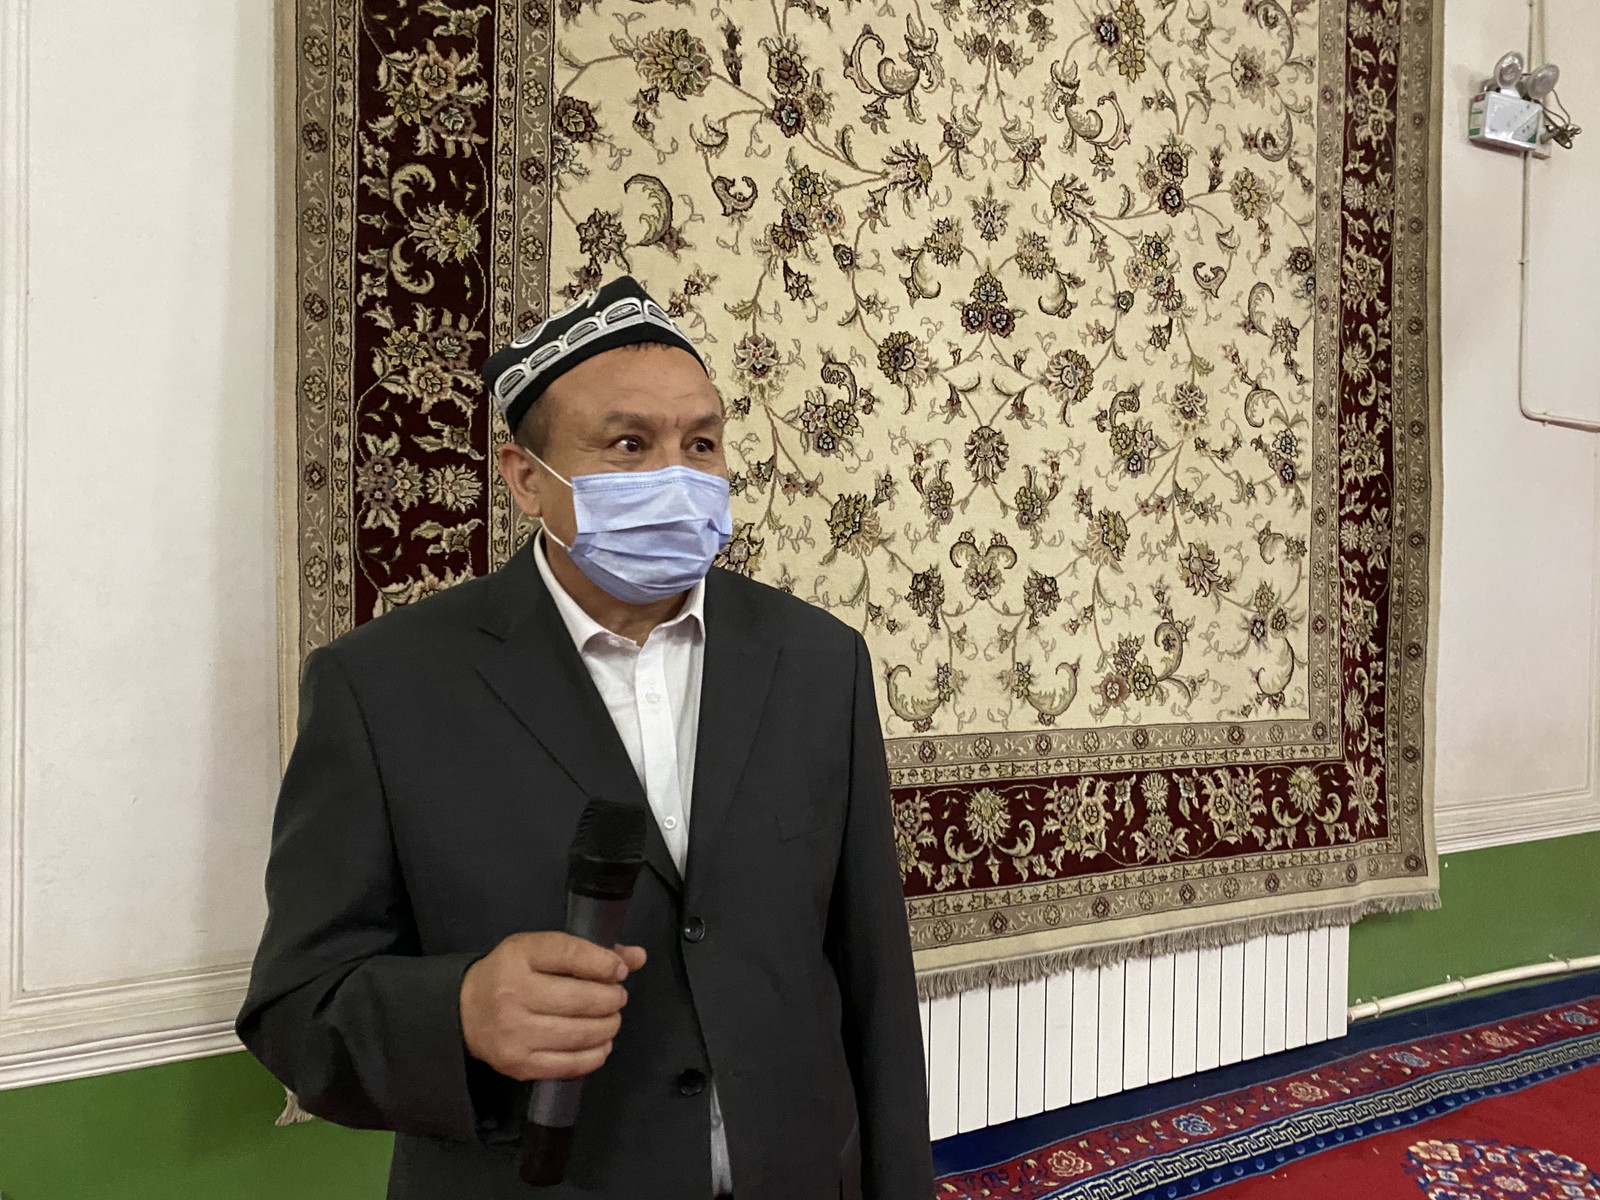 Imã da mesquita de Id Kah, em Kashgar, mostra tapete com imagens da romã, símbolo da unidade entre as etniasAgência O Globo